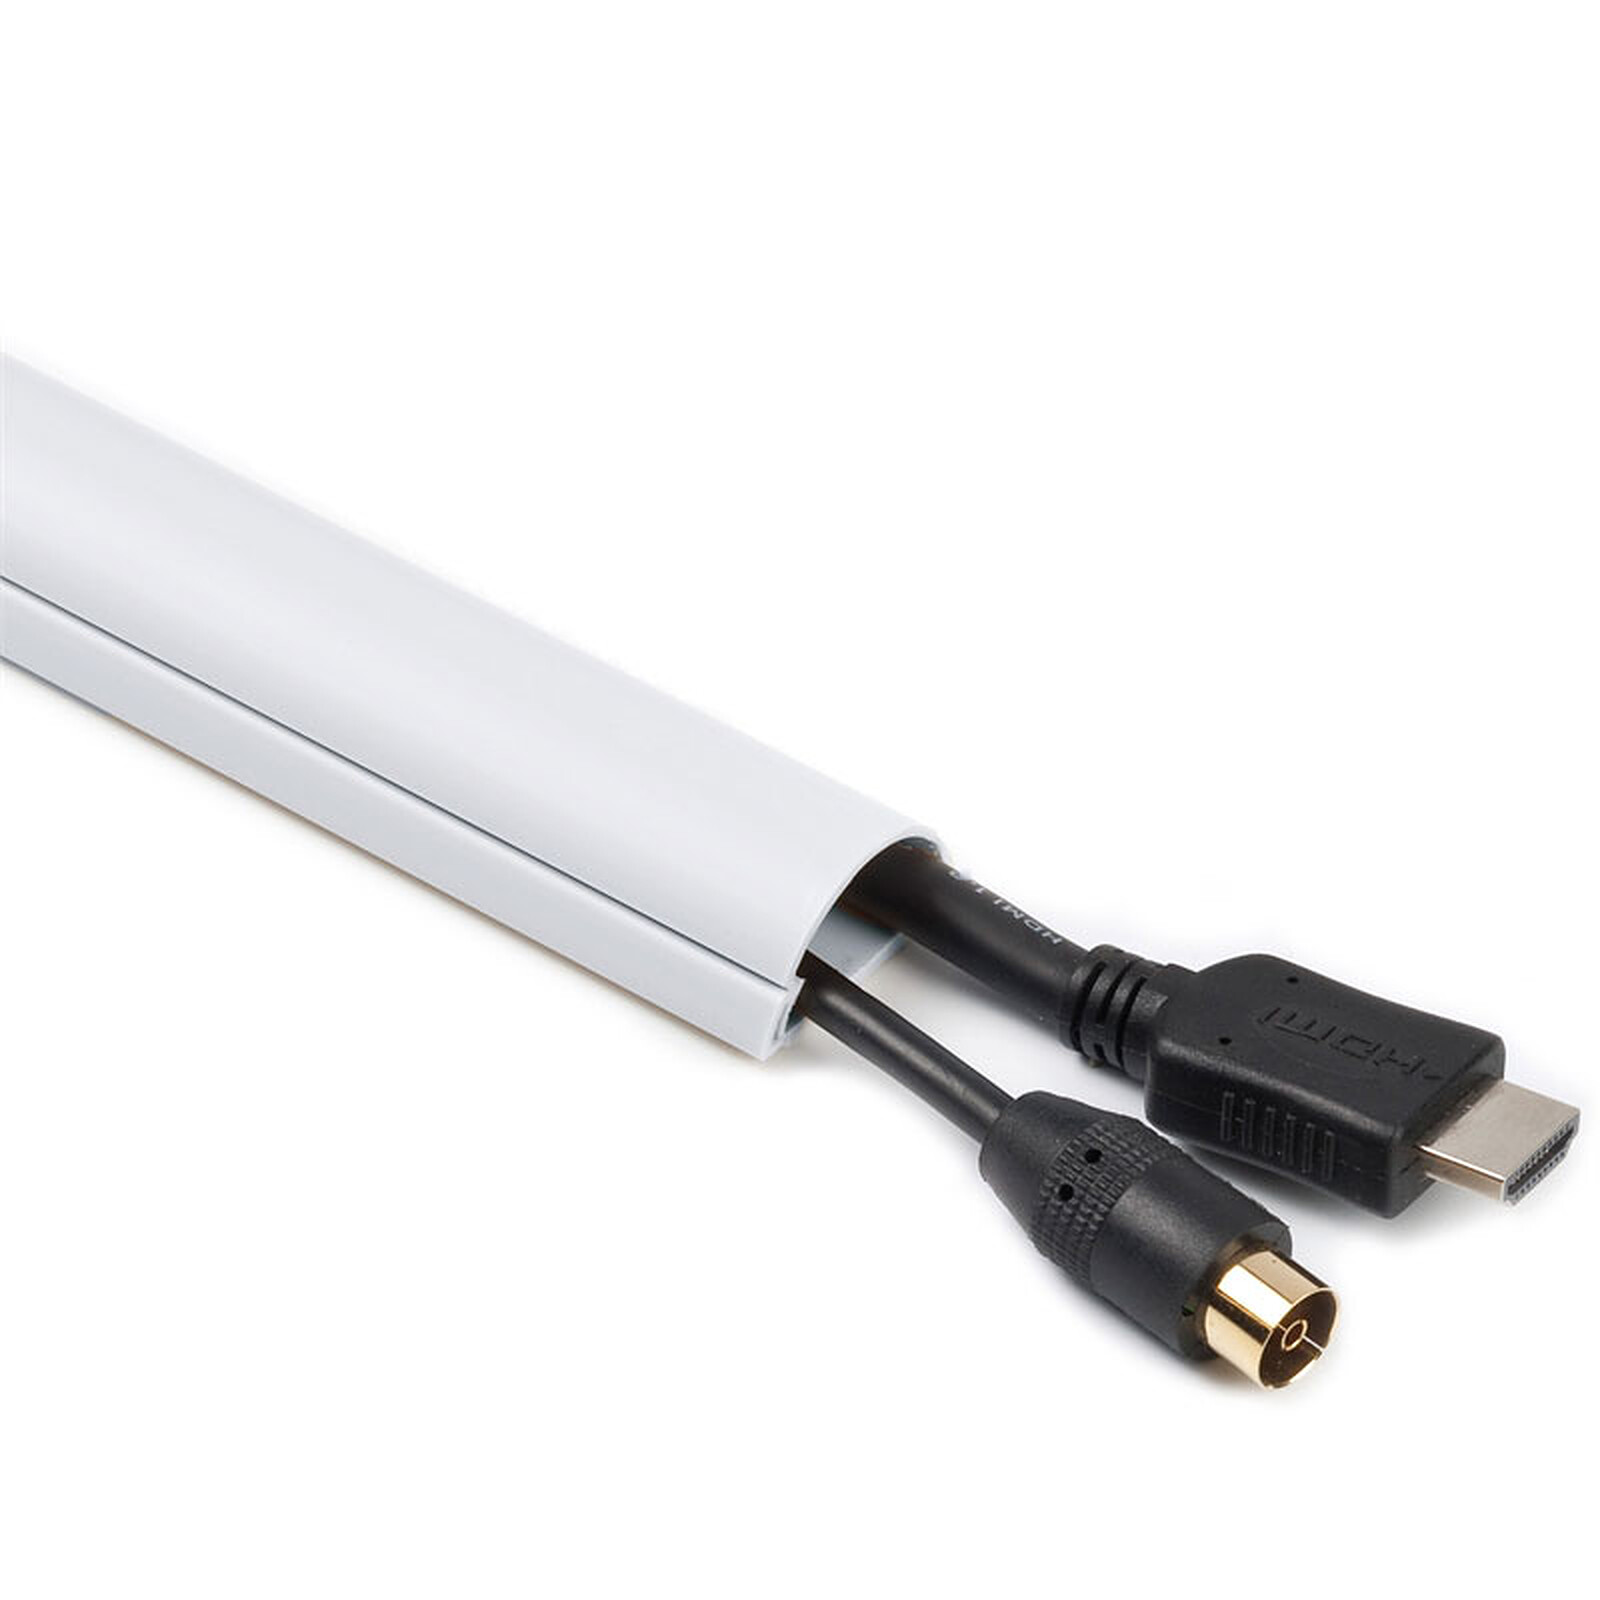 Real Cable CC88 Blanc 1.5m - Passe câble - Garantie 3 ans LDLC